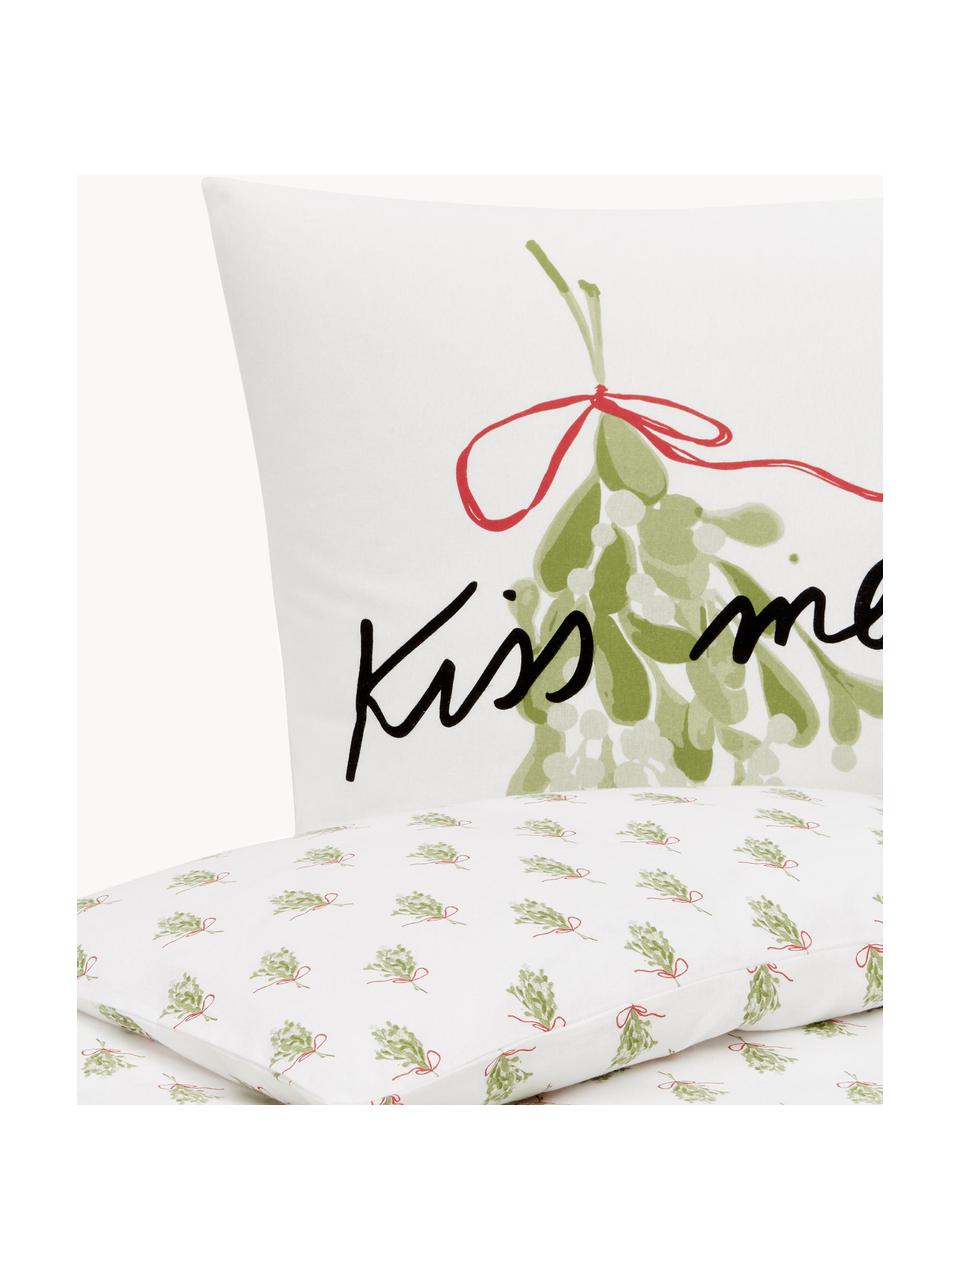 Designer Flanell-Bettwäsche Kiss Me von Kera Till, Webart: Flanell Flanell ist ein k, Weiß, Hellgrün, 135 x 200 cm + 1 Kissen 80 x 80 cm